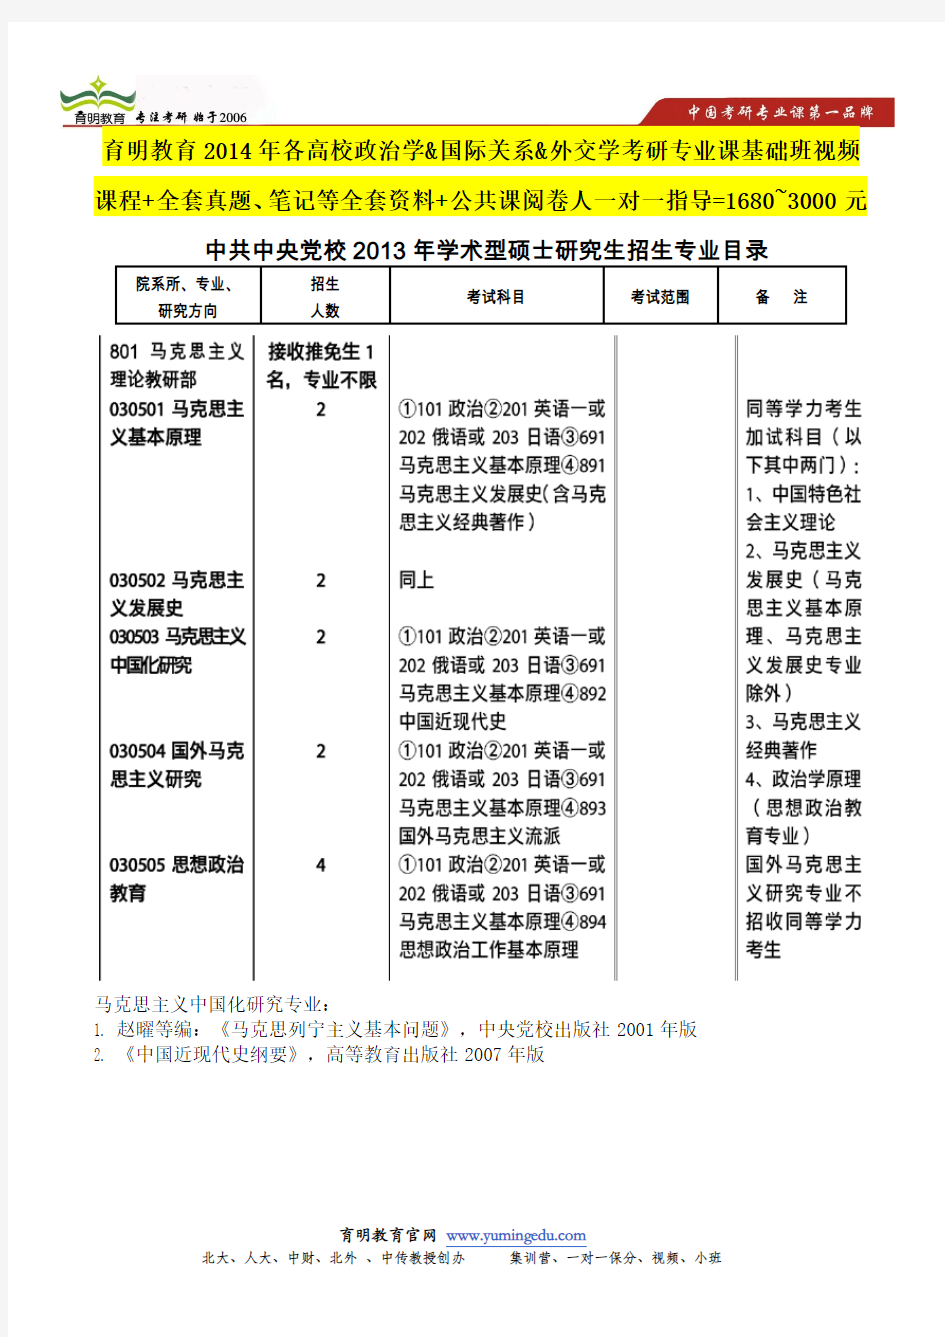 中央党校马克思主义中国化研究考研招生目录,参考书目